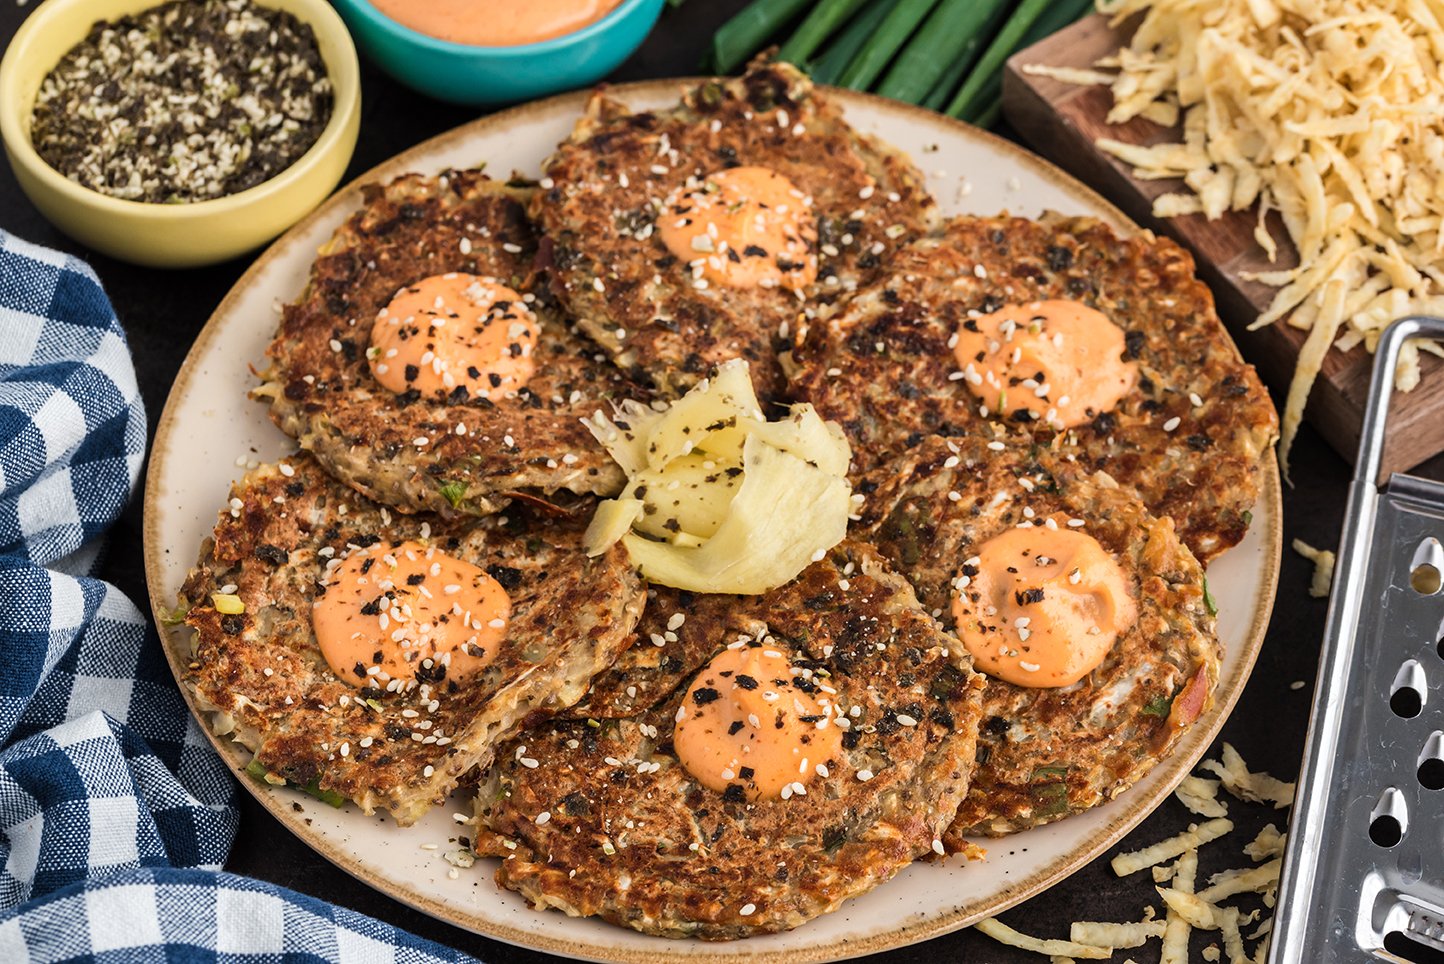 Okonomiyaki vegetable pancakes